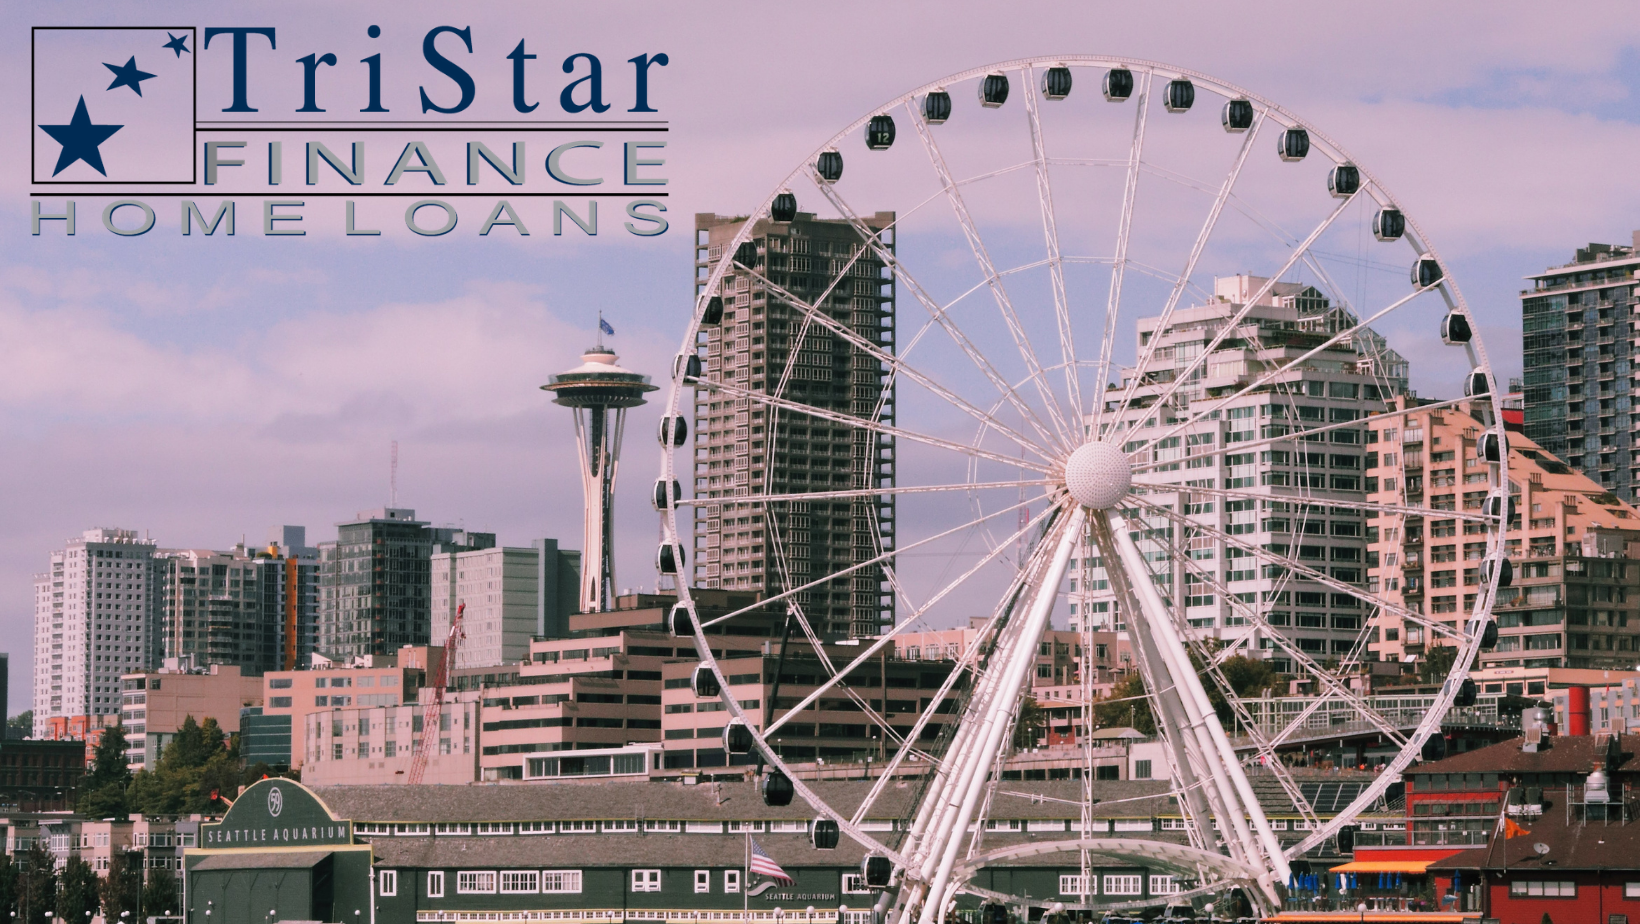 TriStar Finance, Inc. I HOME LOANS I MORTGAGE COMPANY